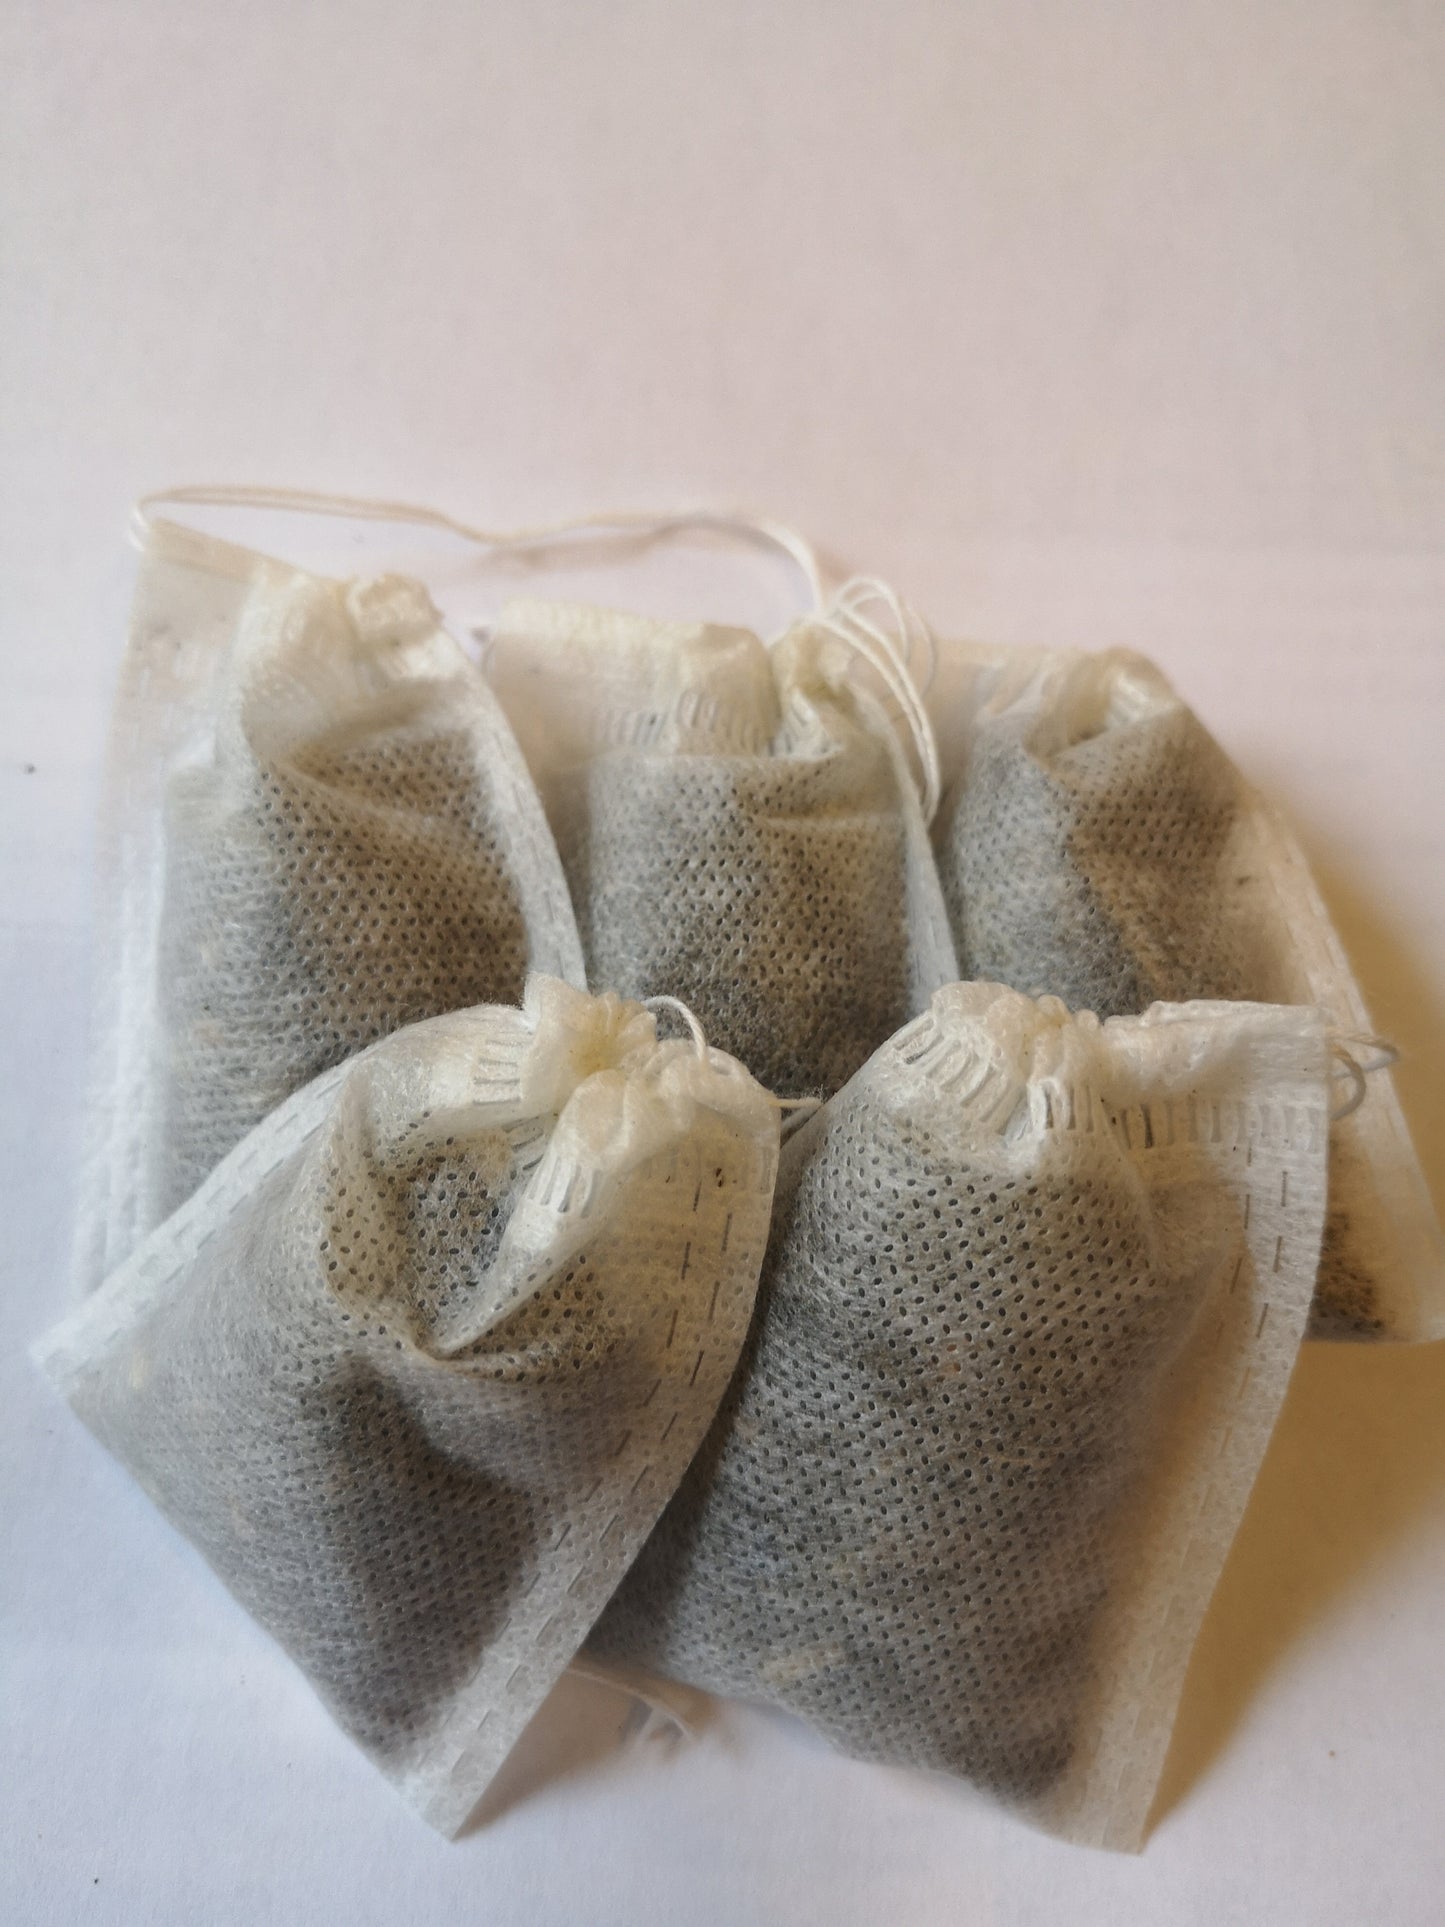 Chrysanthemum Flower Tea, Herbal Tea Bags. 12-24 bags